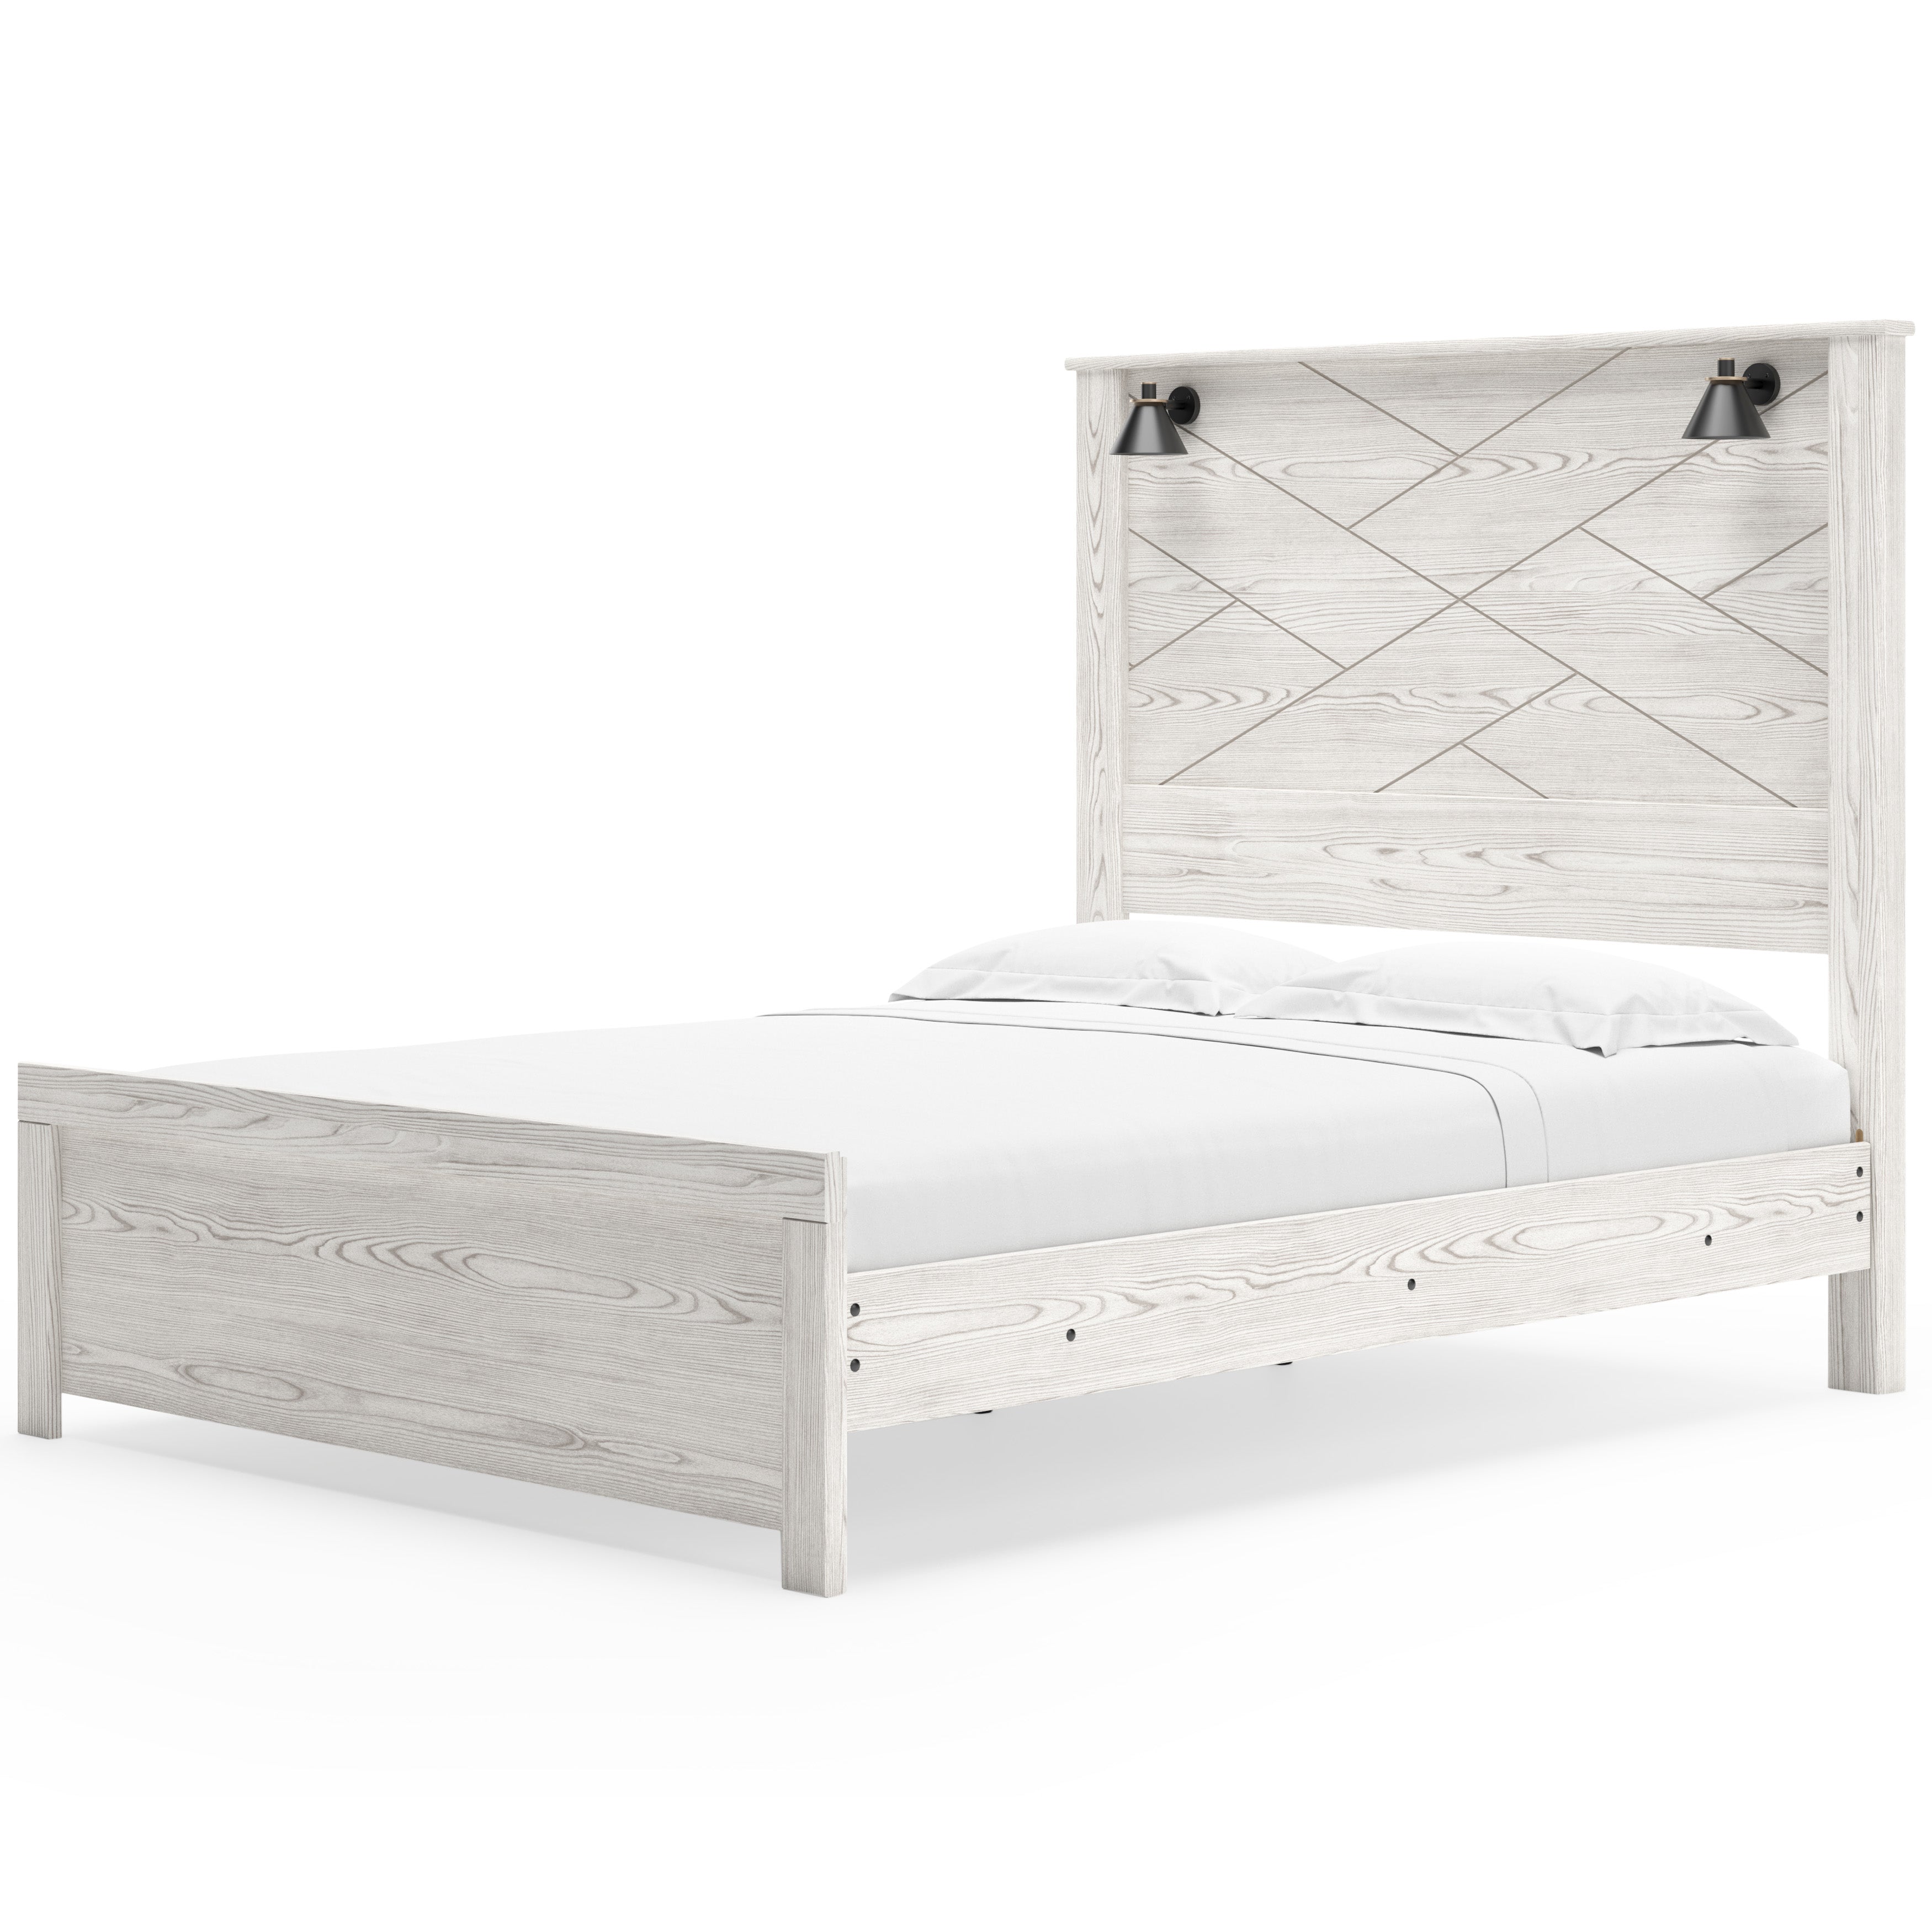 Gerridan Queen Panel Bed with Mirrored Dresser